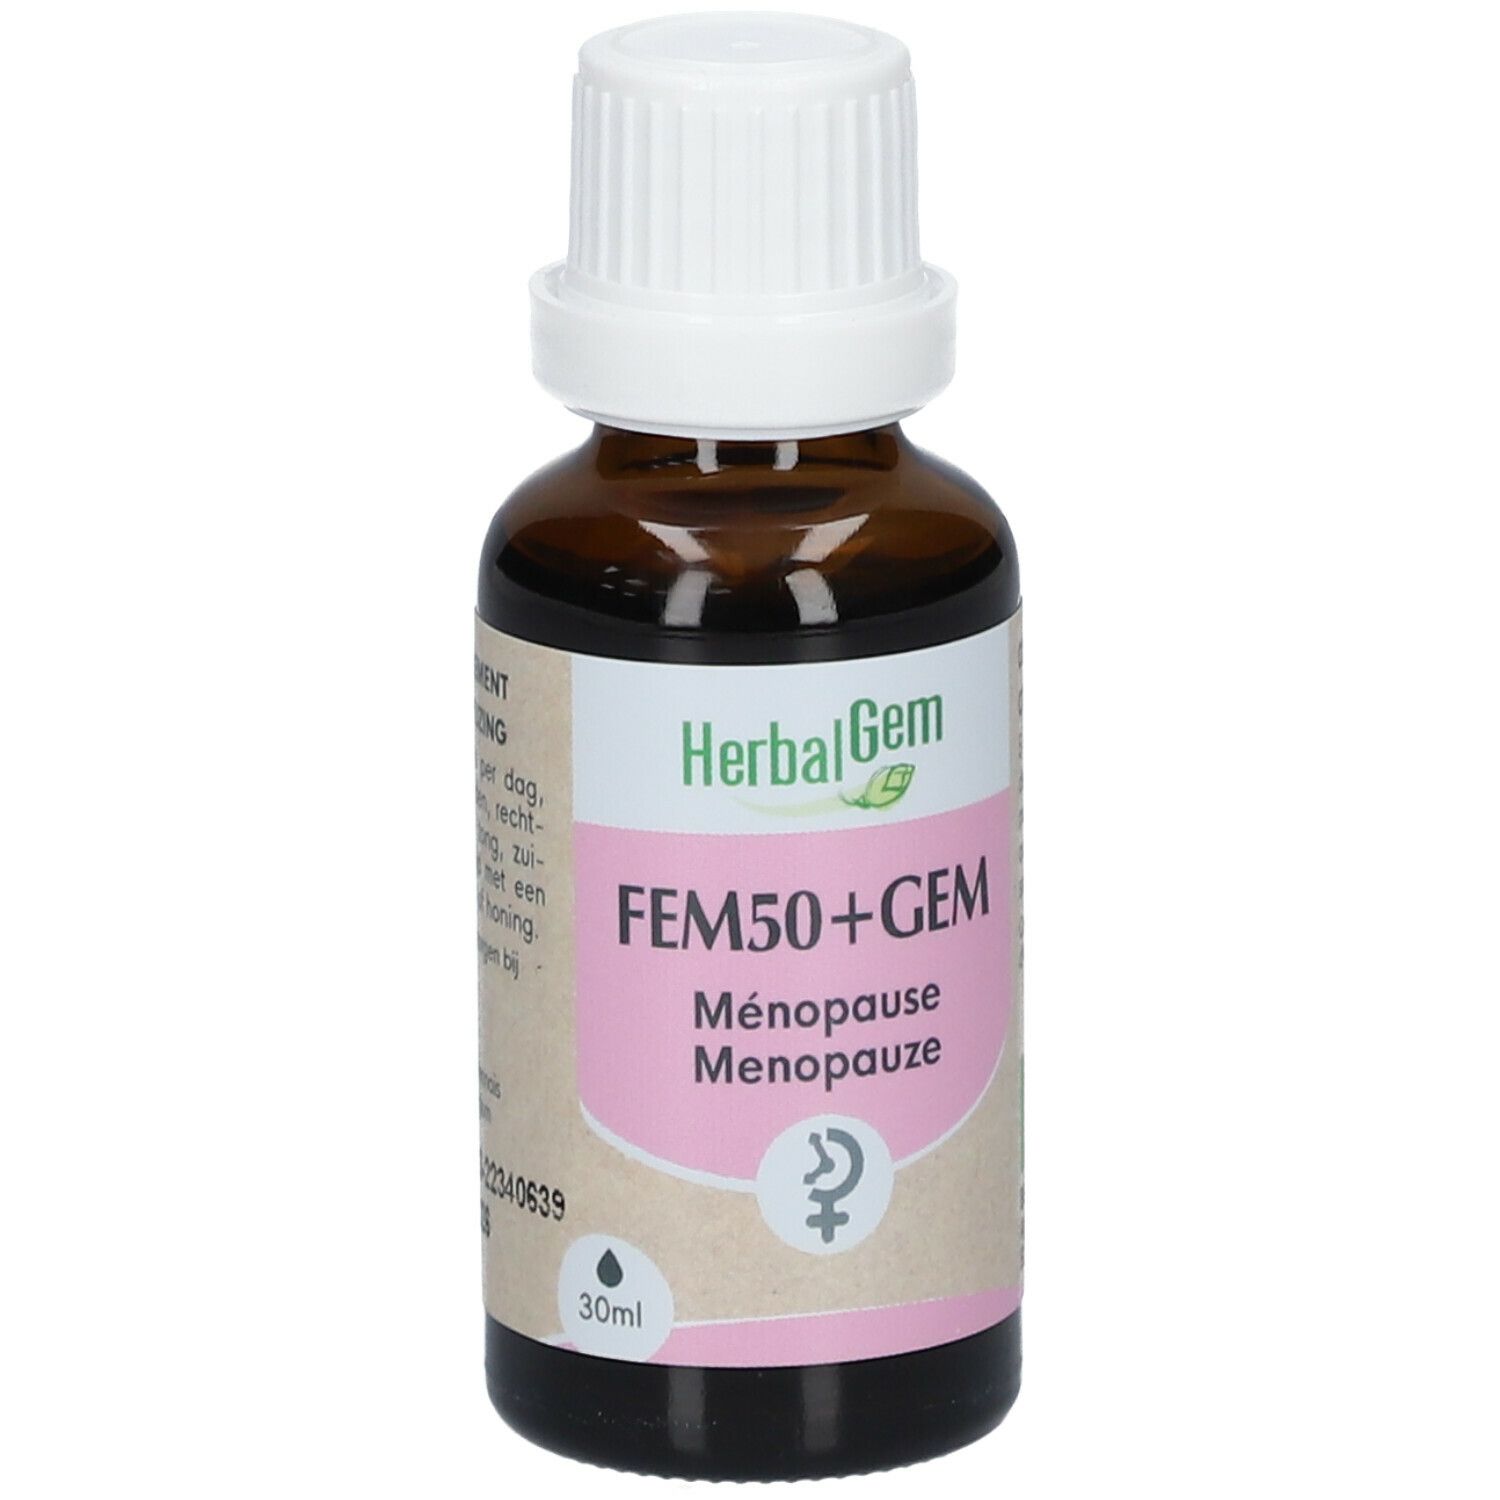 HerbalGem FEM50+GEM